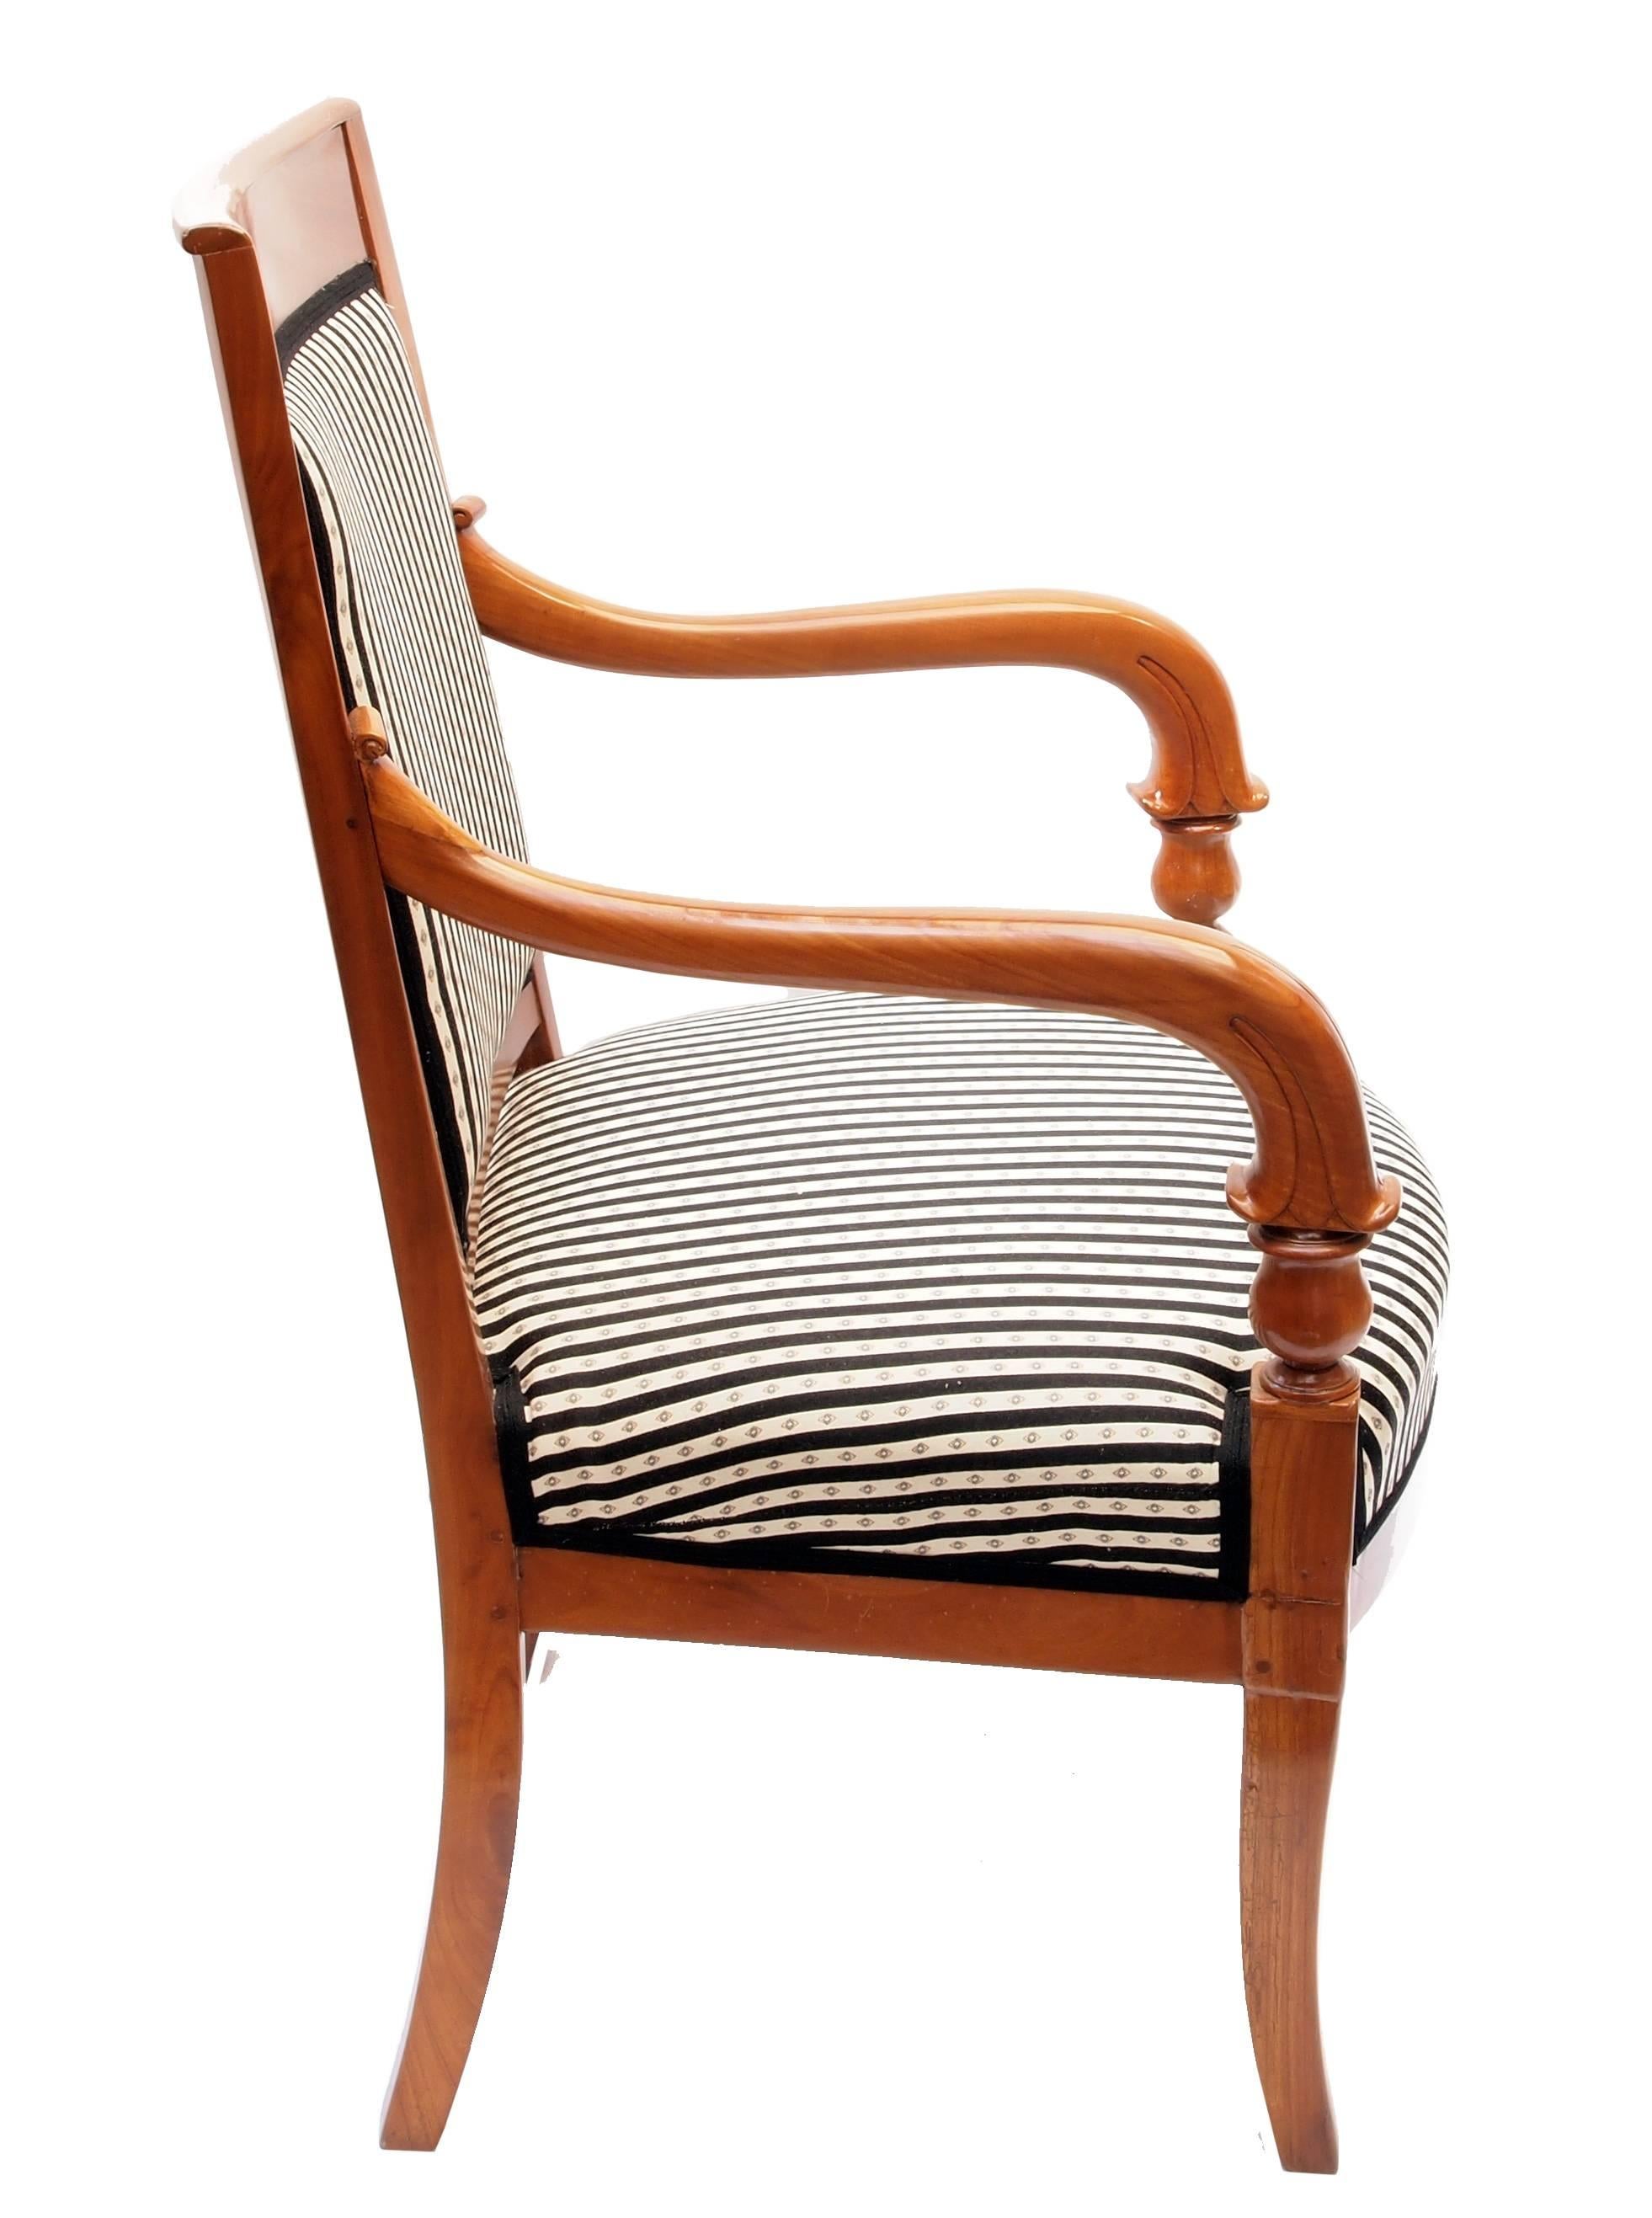 Schöner Biedermeier Sessel aus Süddeutschland, sehr guter restaurierter Zustand. Massives Kirschholz und komplett neu gepolstert.

Maße: Sitzhöhe 45 cm.